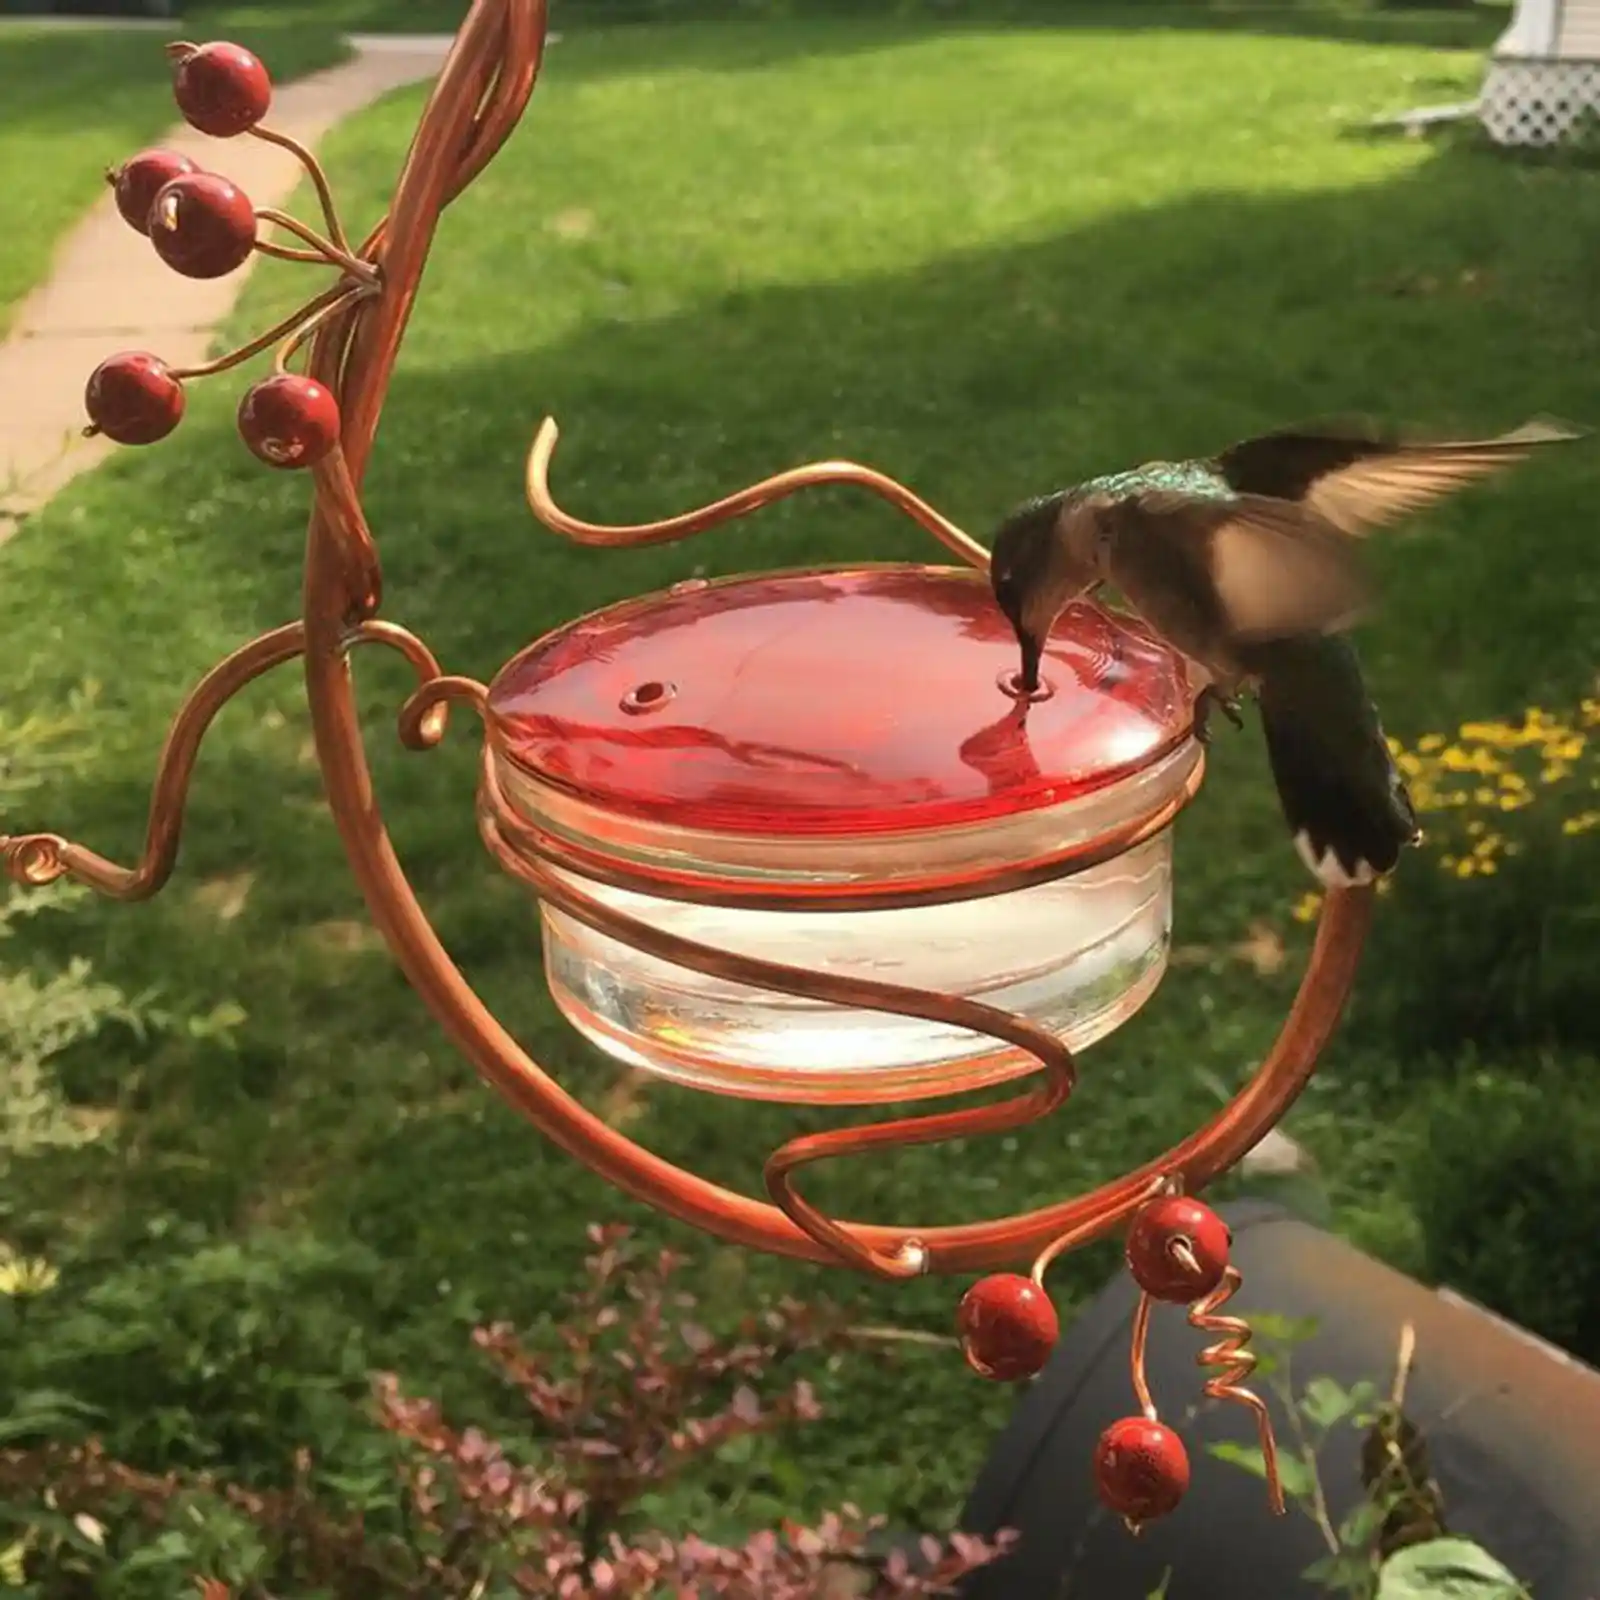 Mangeoire à oiseaux de jardin pour colibris facile nettoyer pont décor -  SENEGAL ELECTROMENAGER